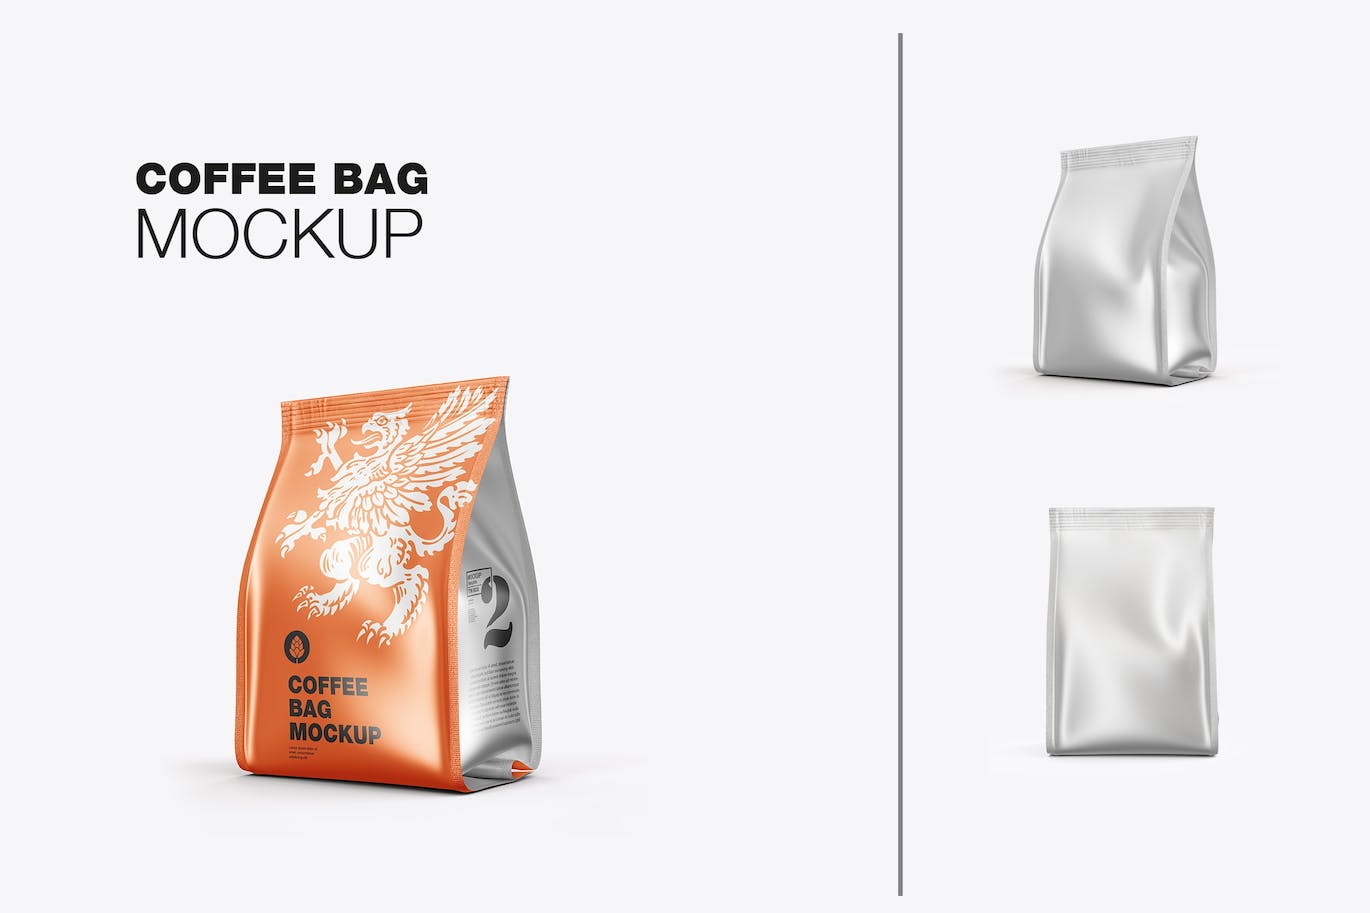 金属纸咖啡袋包装样机图 Pack Metallic Paper Coffee Bag Mockup 样机素材 第1张